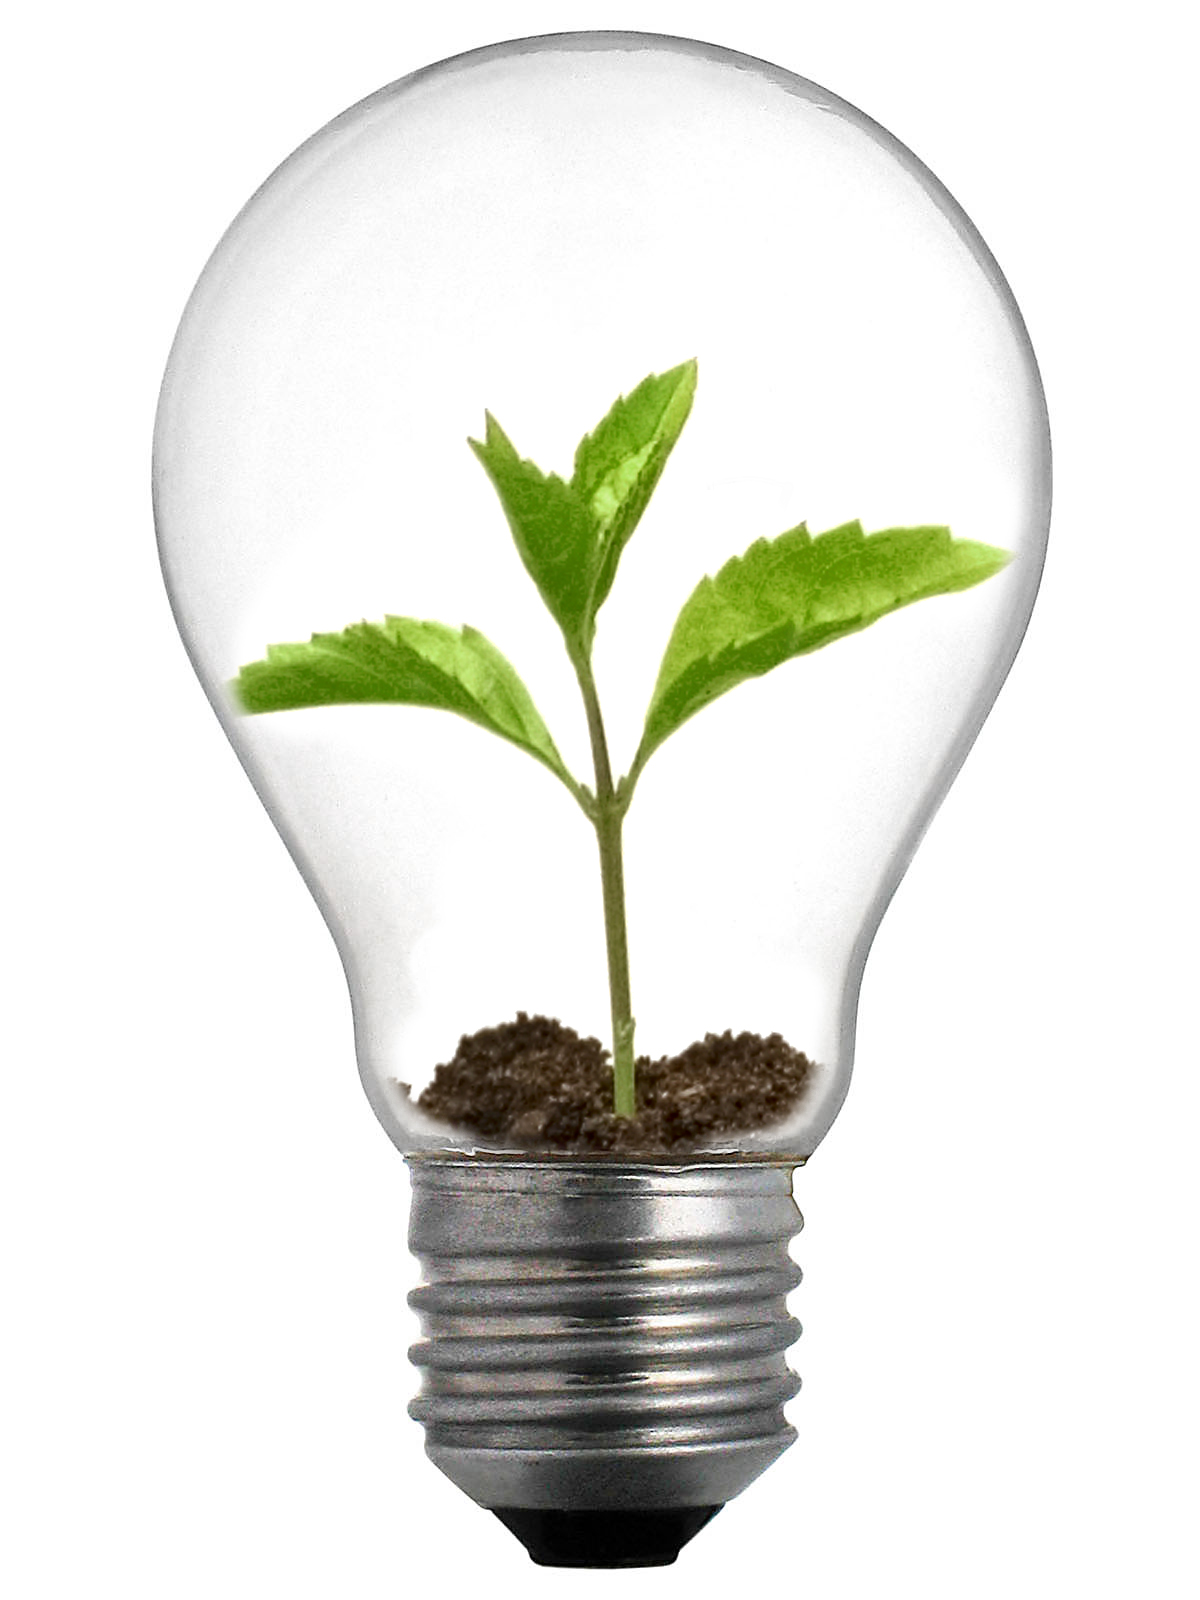 The innovation of light bulbs